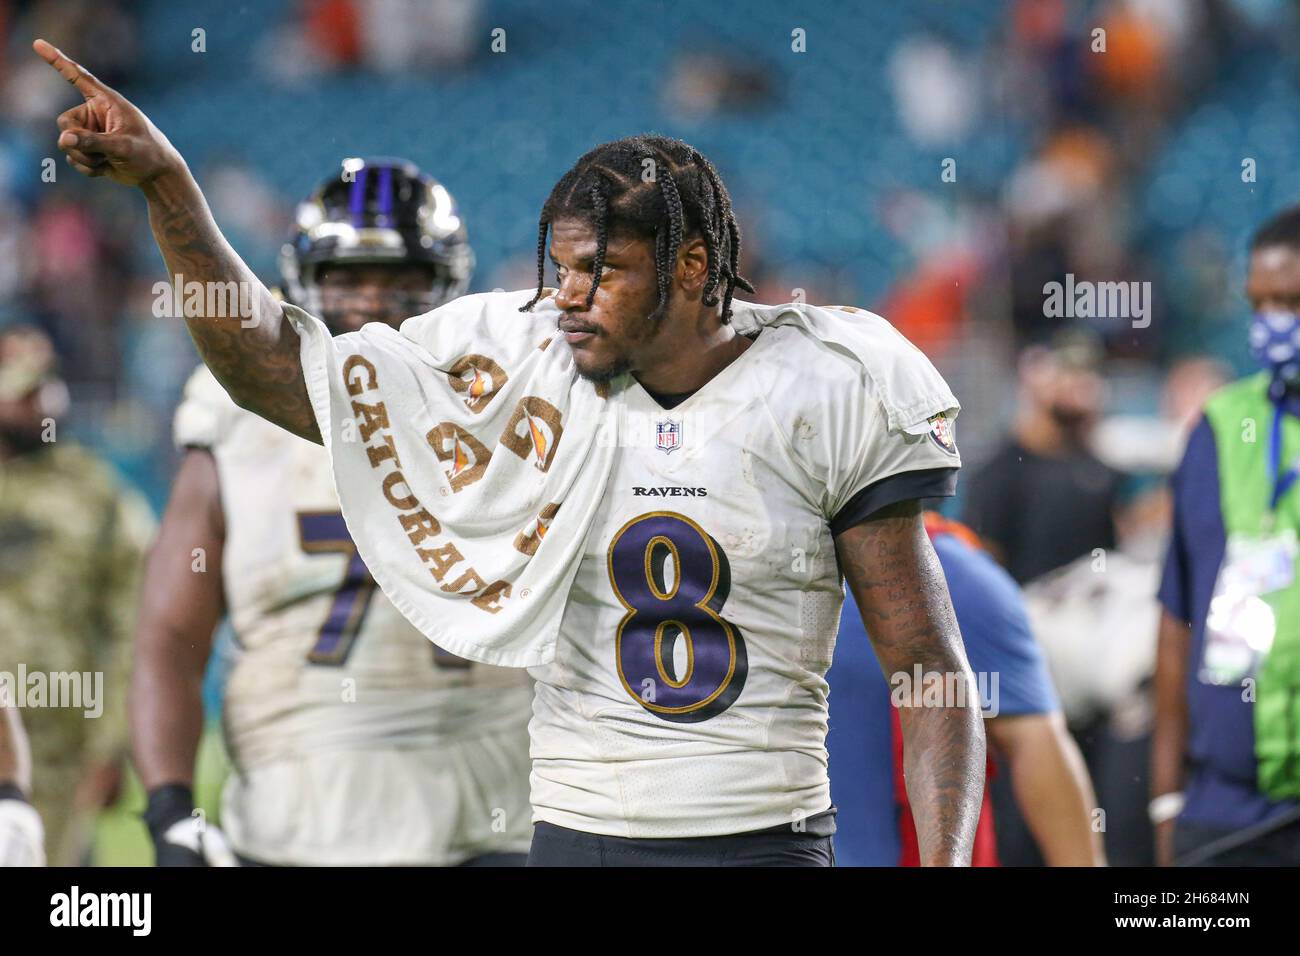 Jeudi 11 novembre 2021 ; Miami Gardens, FL USA ;Le quarterback de Baltimore Ravens Lamar Jackson (8) se dirige vers le vestiaire en pointant vers les fans Banque D'Images